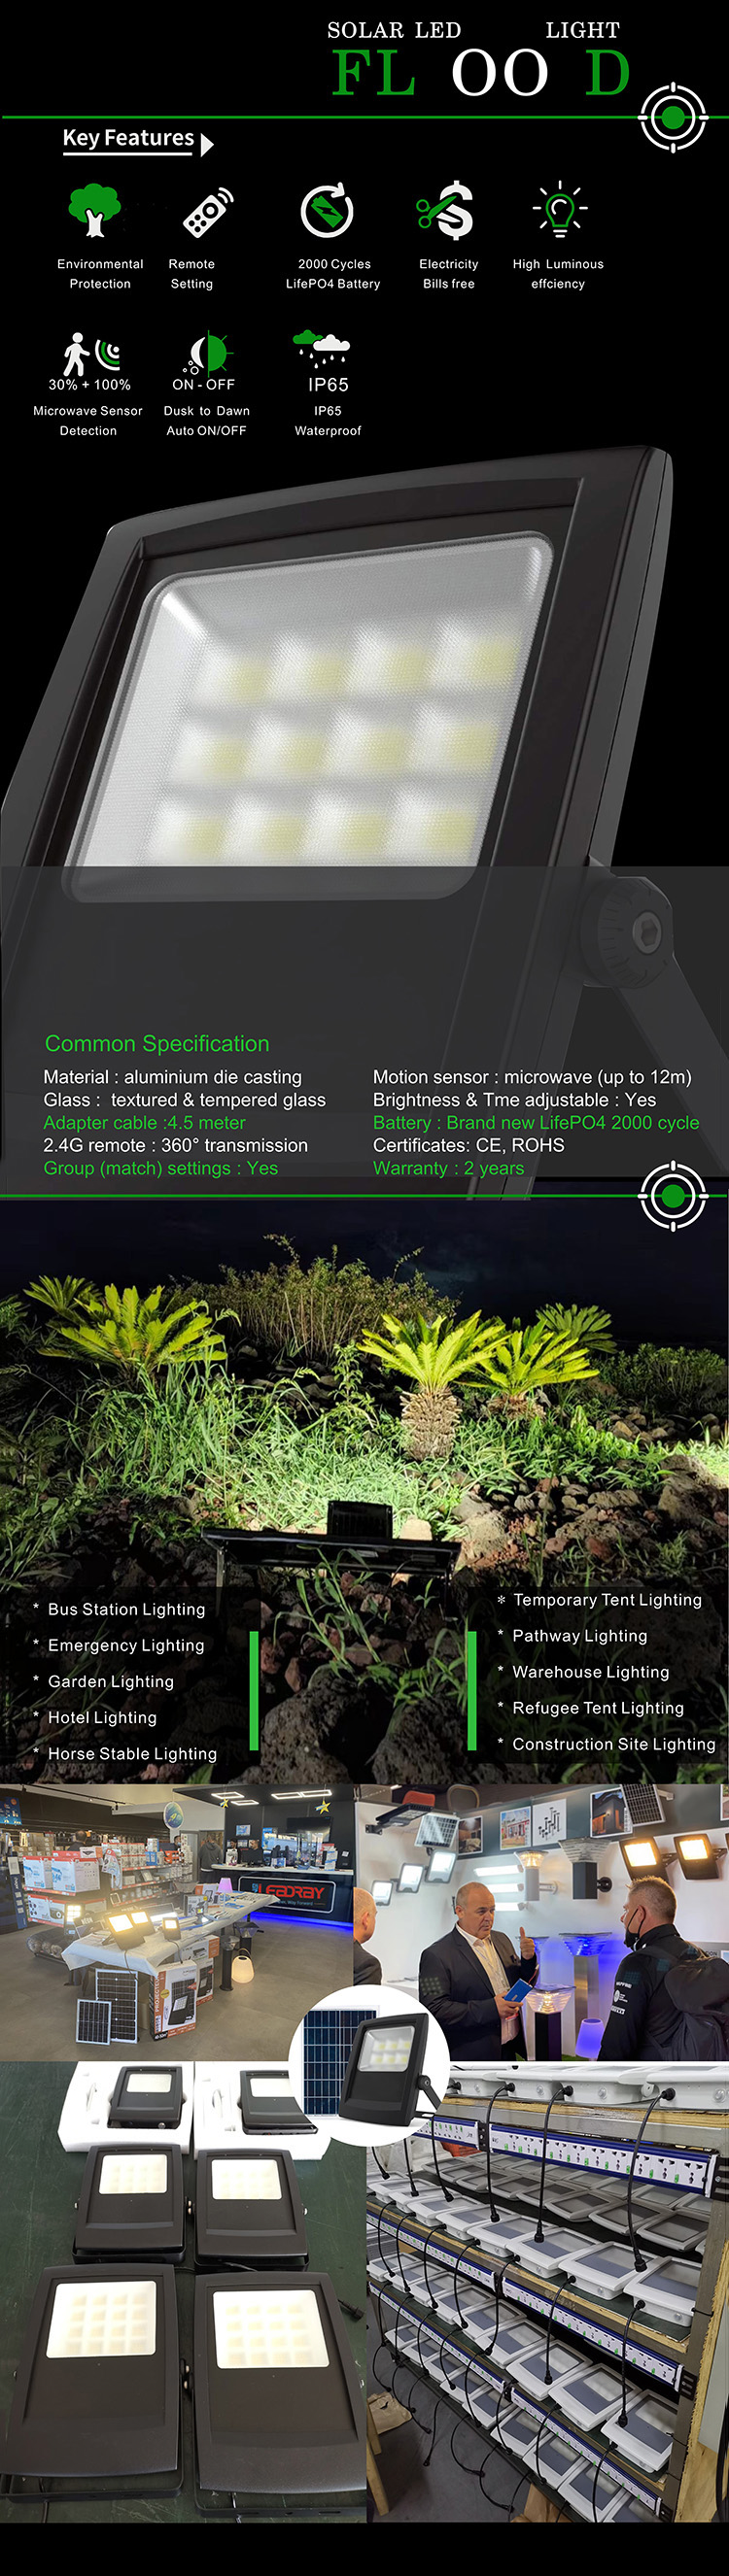 Cheap Solar led flood light for Garden Lighting